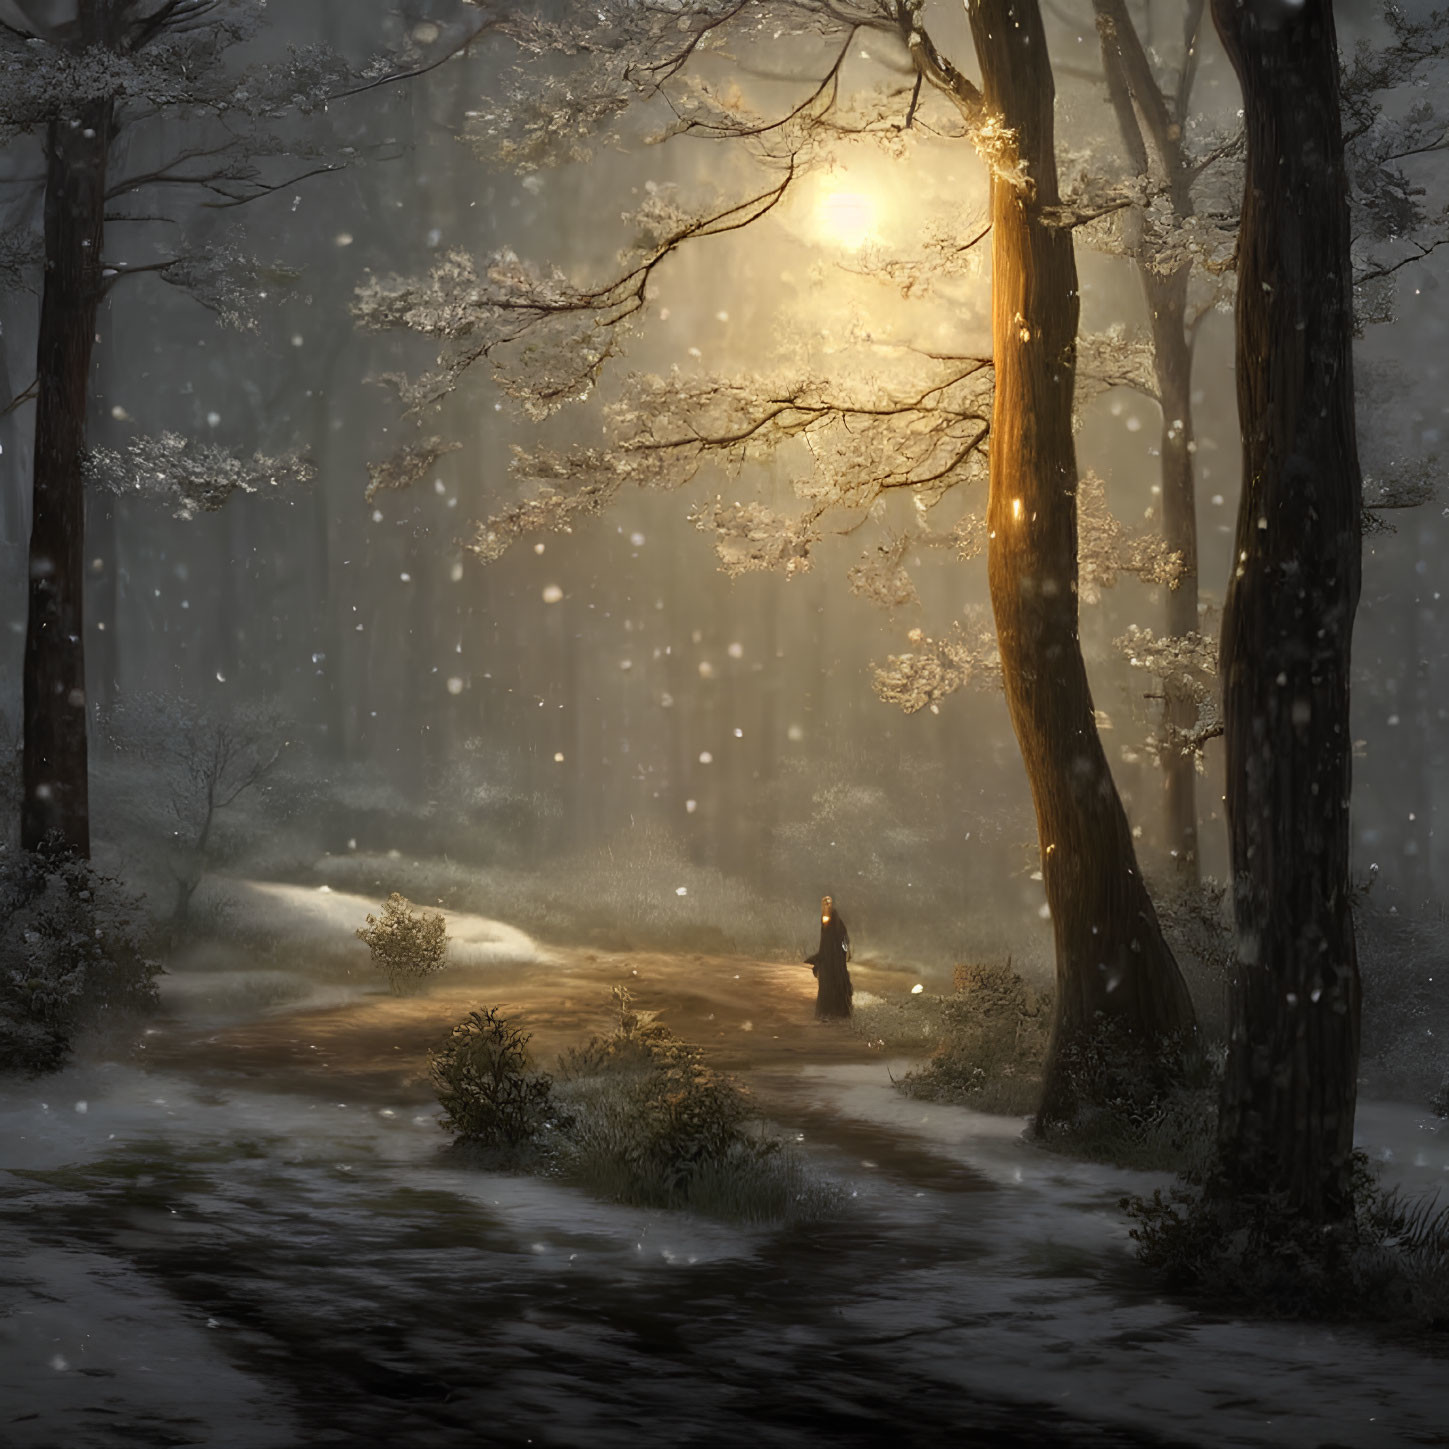 Snowy forest scene with lone figure walking in sunlight